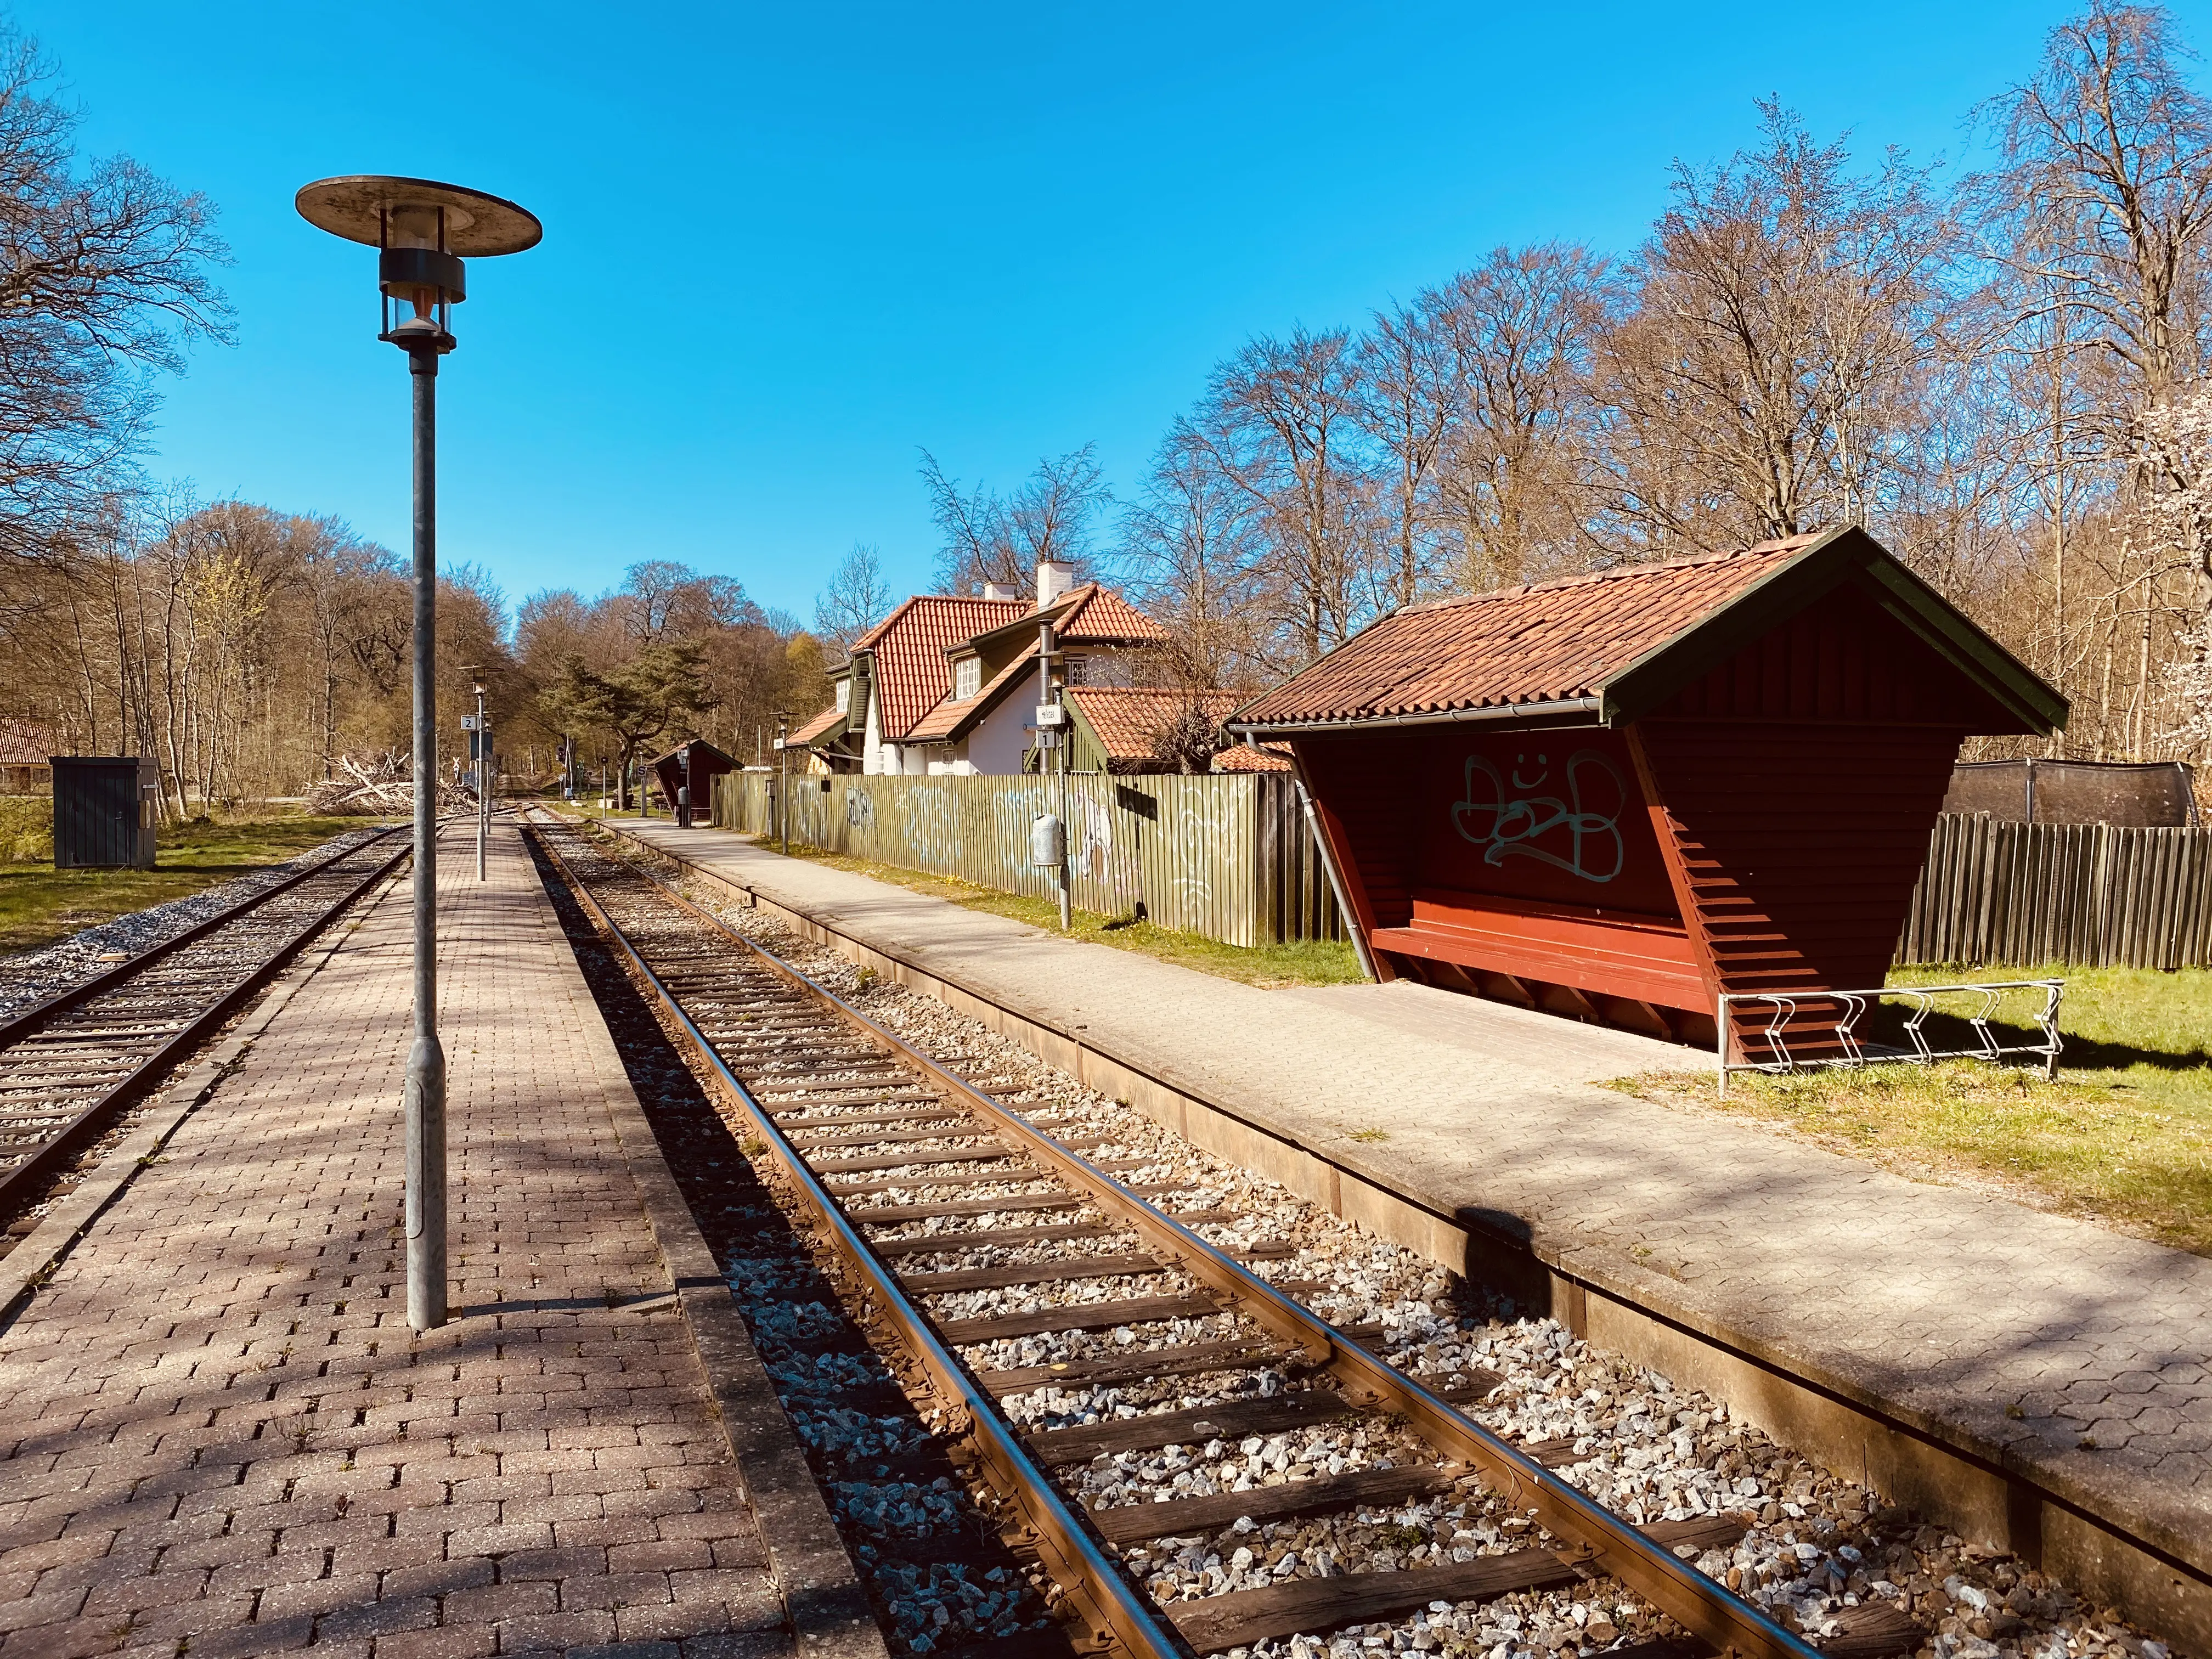 Billede af Hellebæk Station.